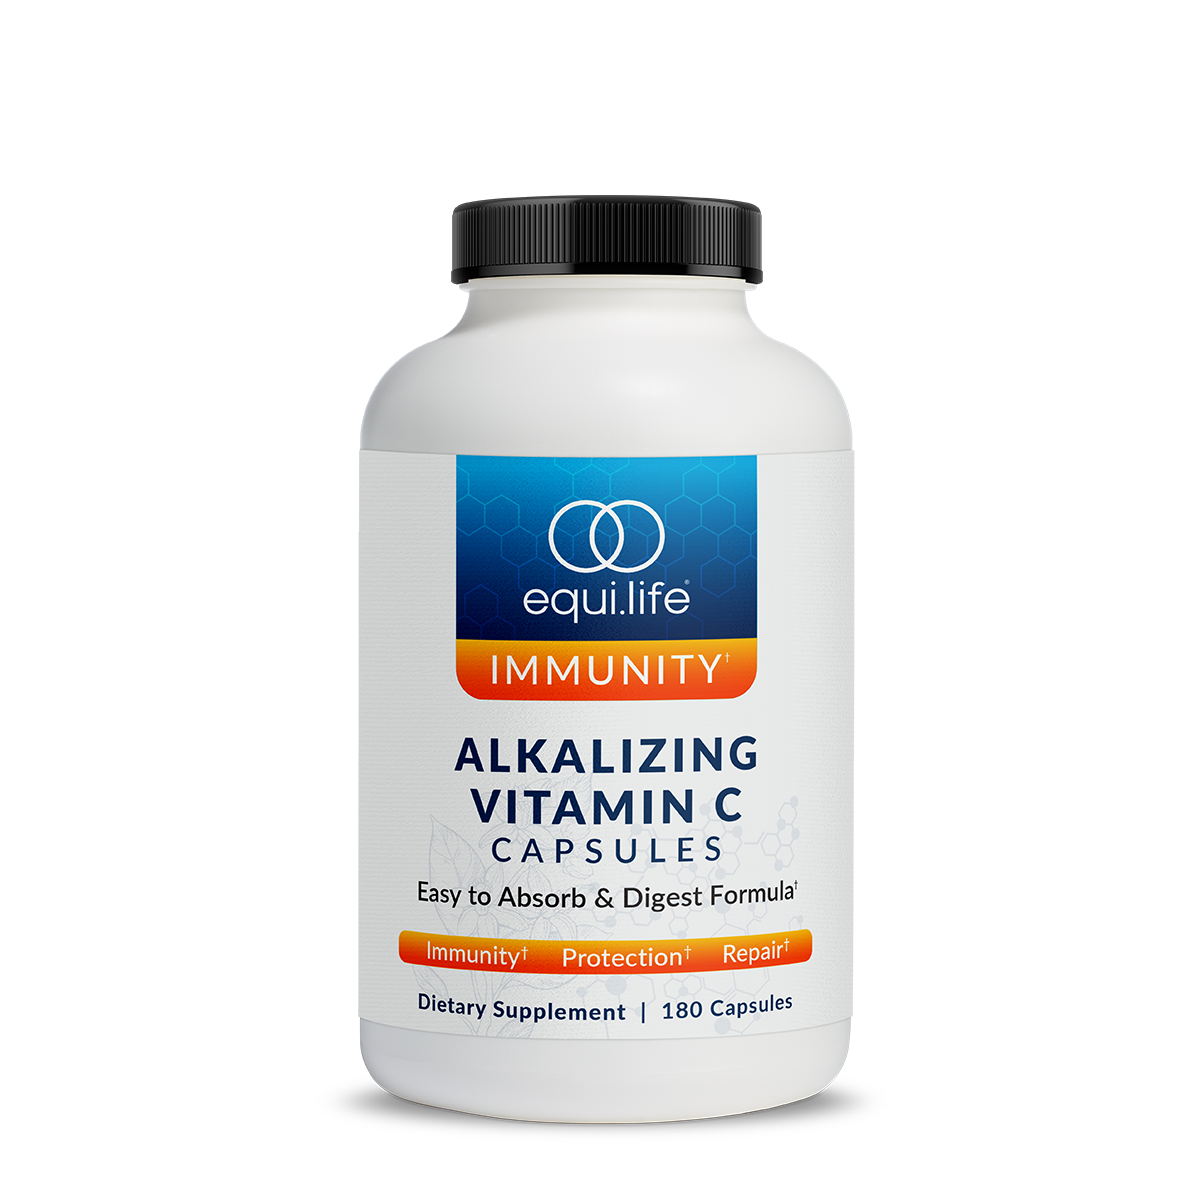 Alkalizing Vitamin C (Capsules)